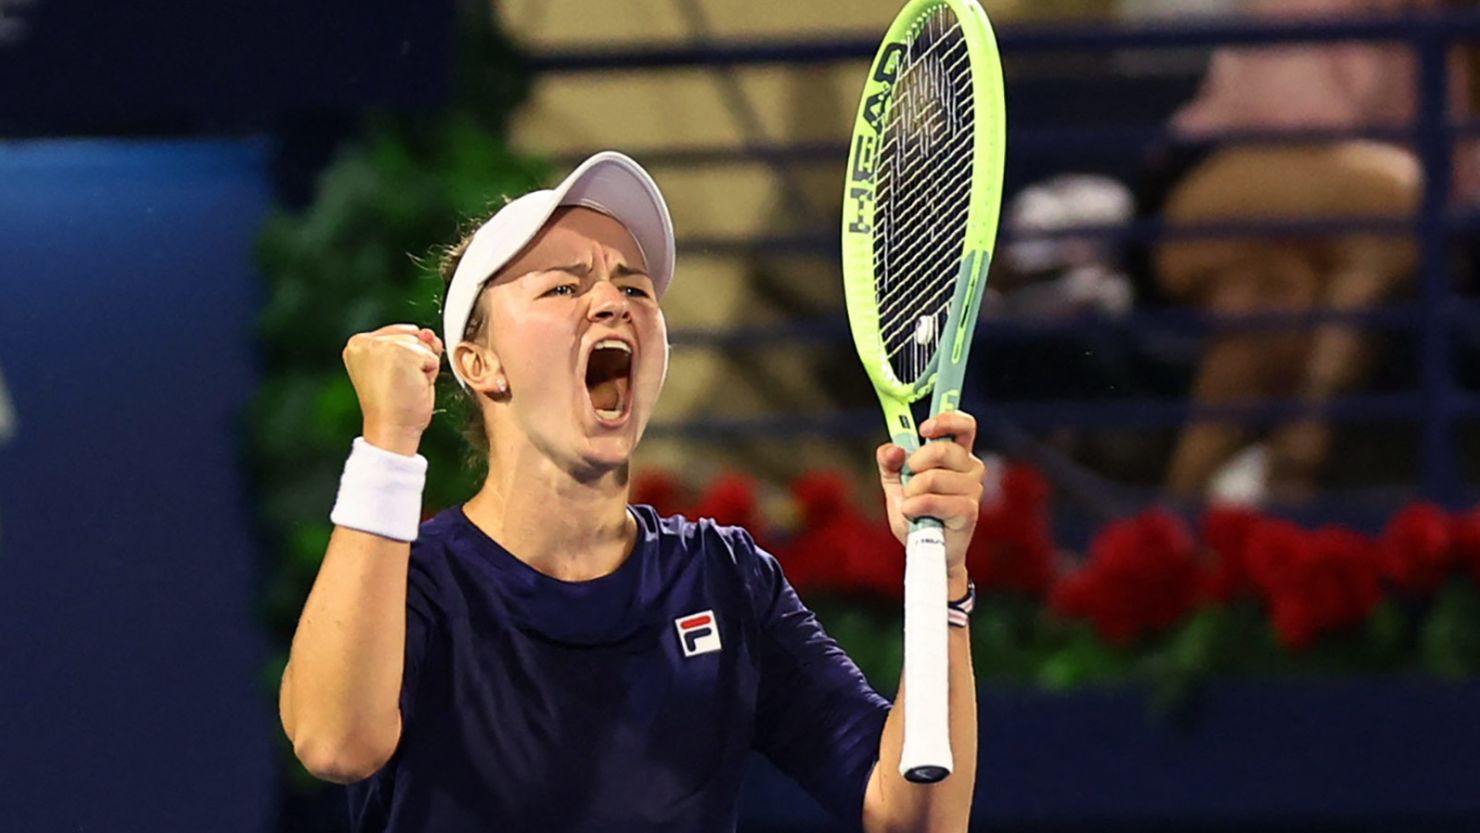 Krejcikova stuns top-ranked Swiatek to claim Dubai crown